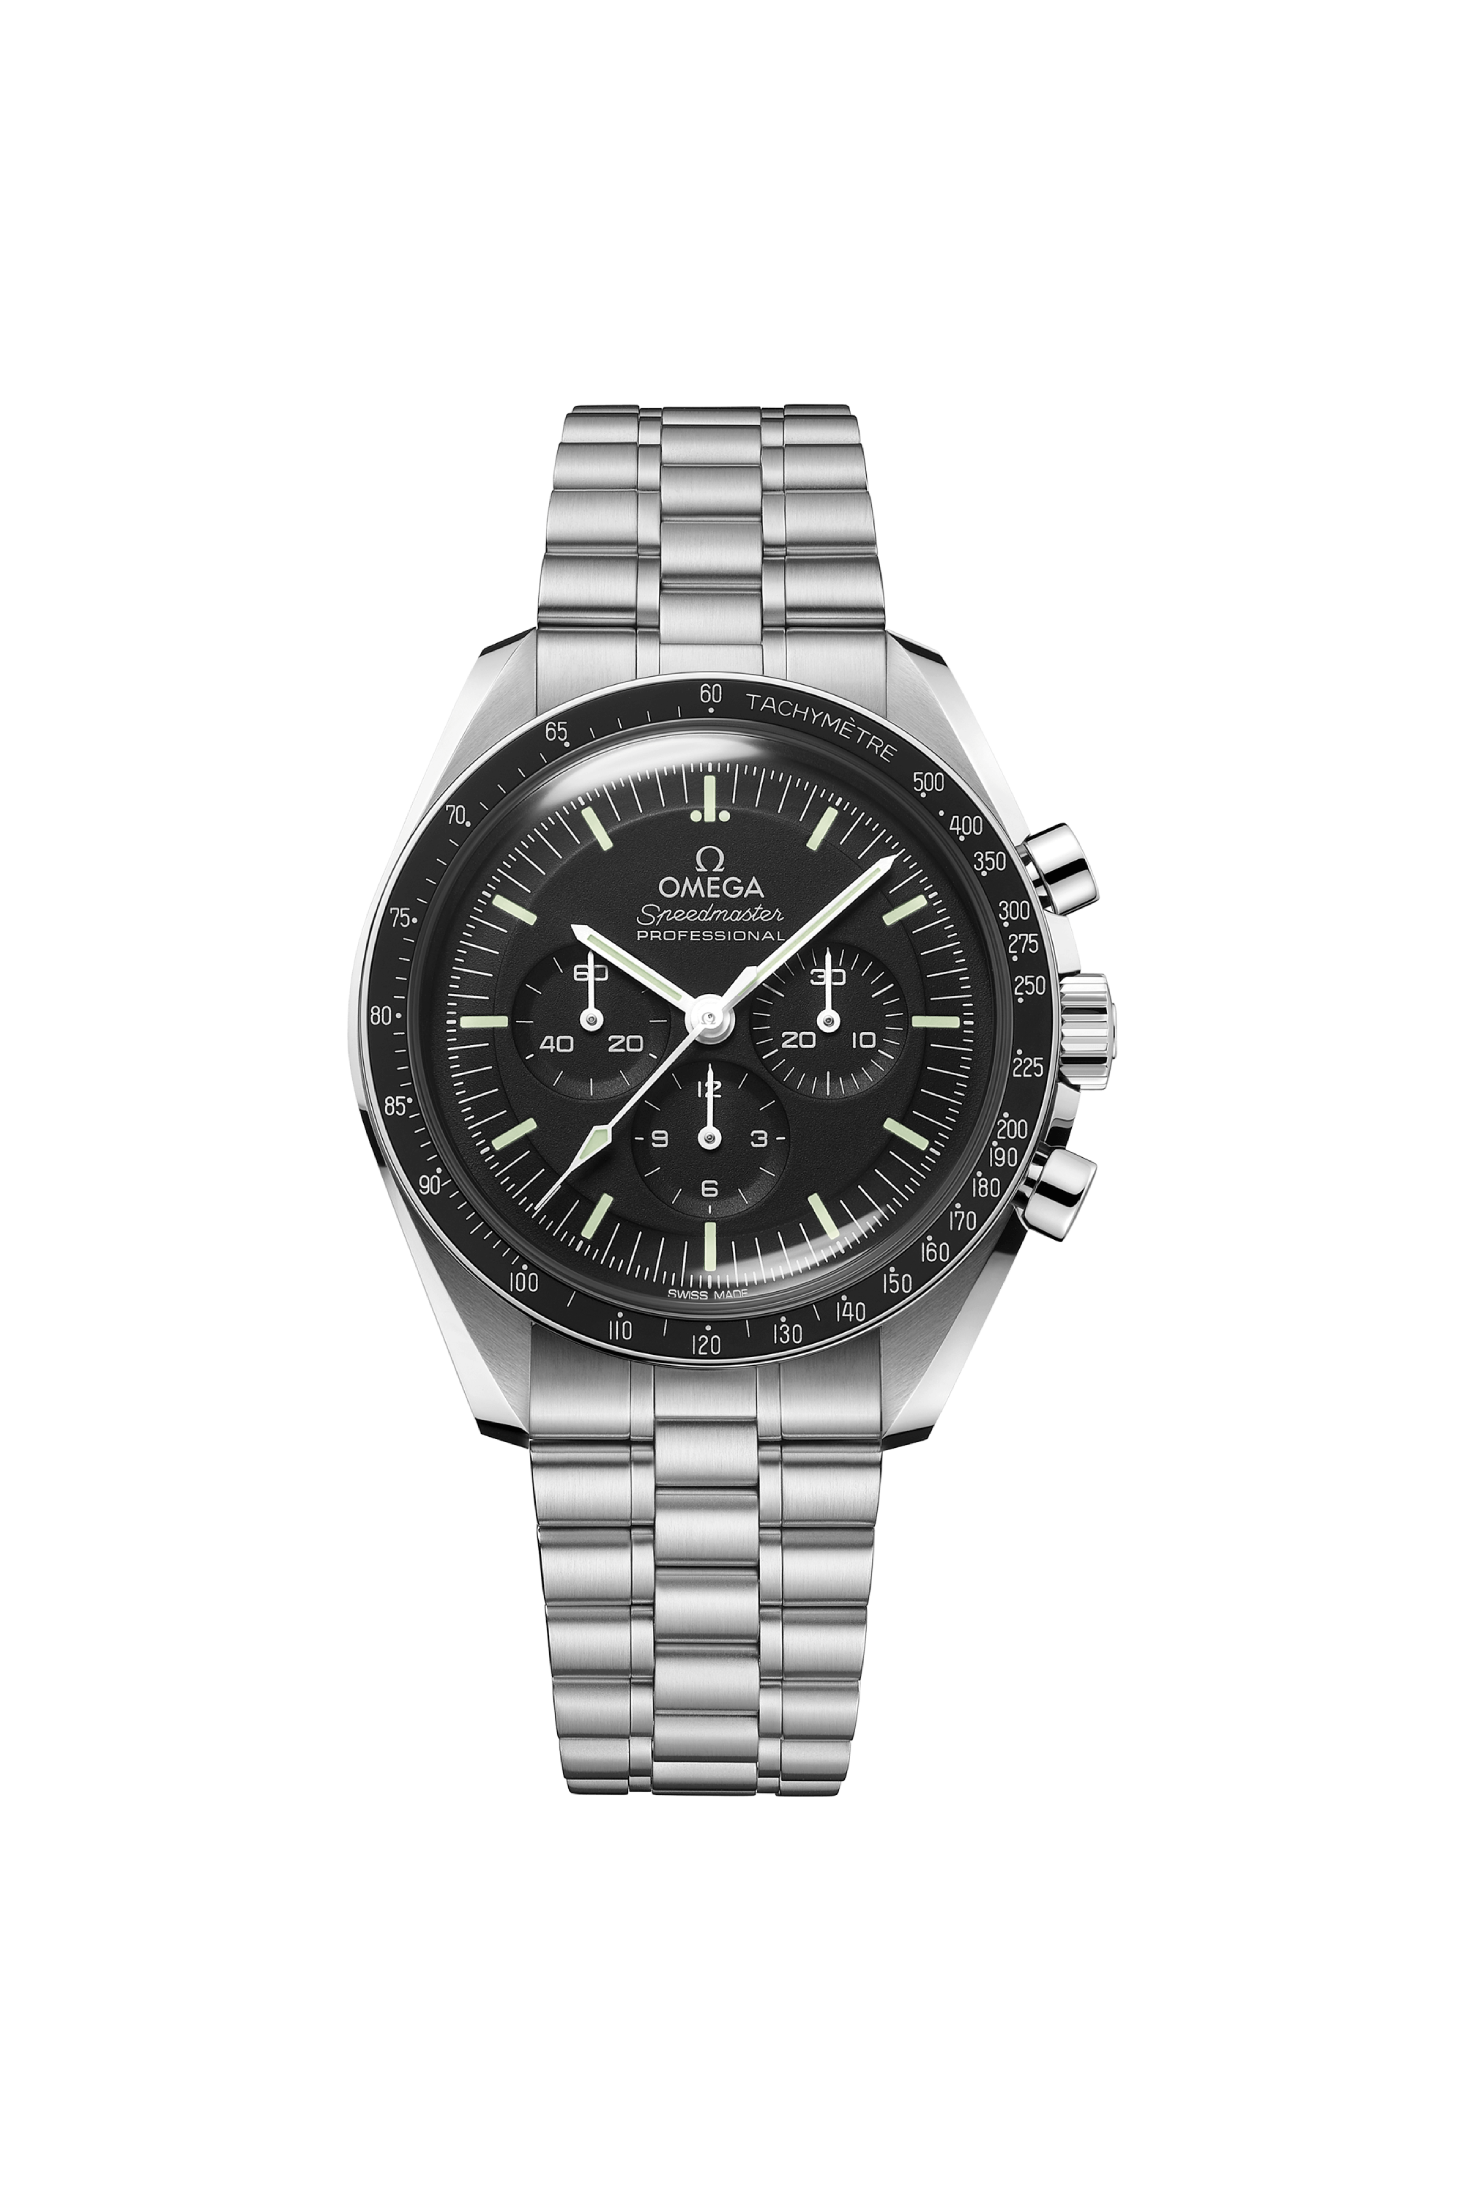 Men's watch / unisex  OMEGA, Speedmaster Moonwatch Professional / 42mm, SKU: 310.30.42.50.01.001 | watchphilosophy.co.uk